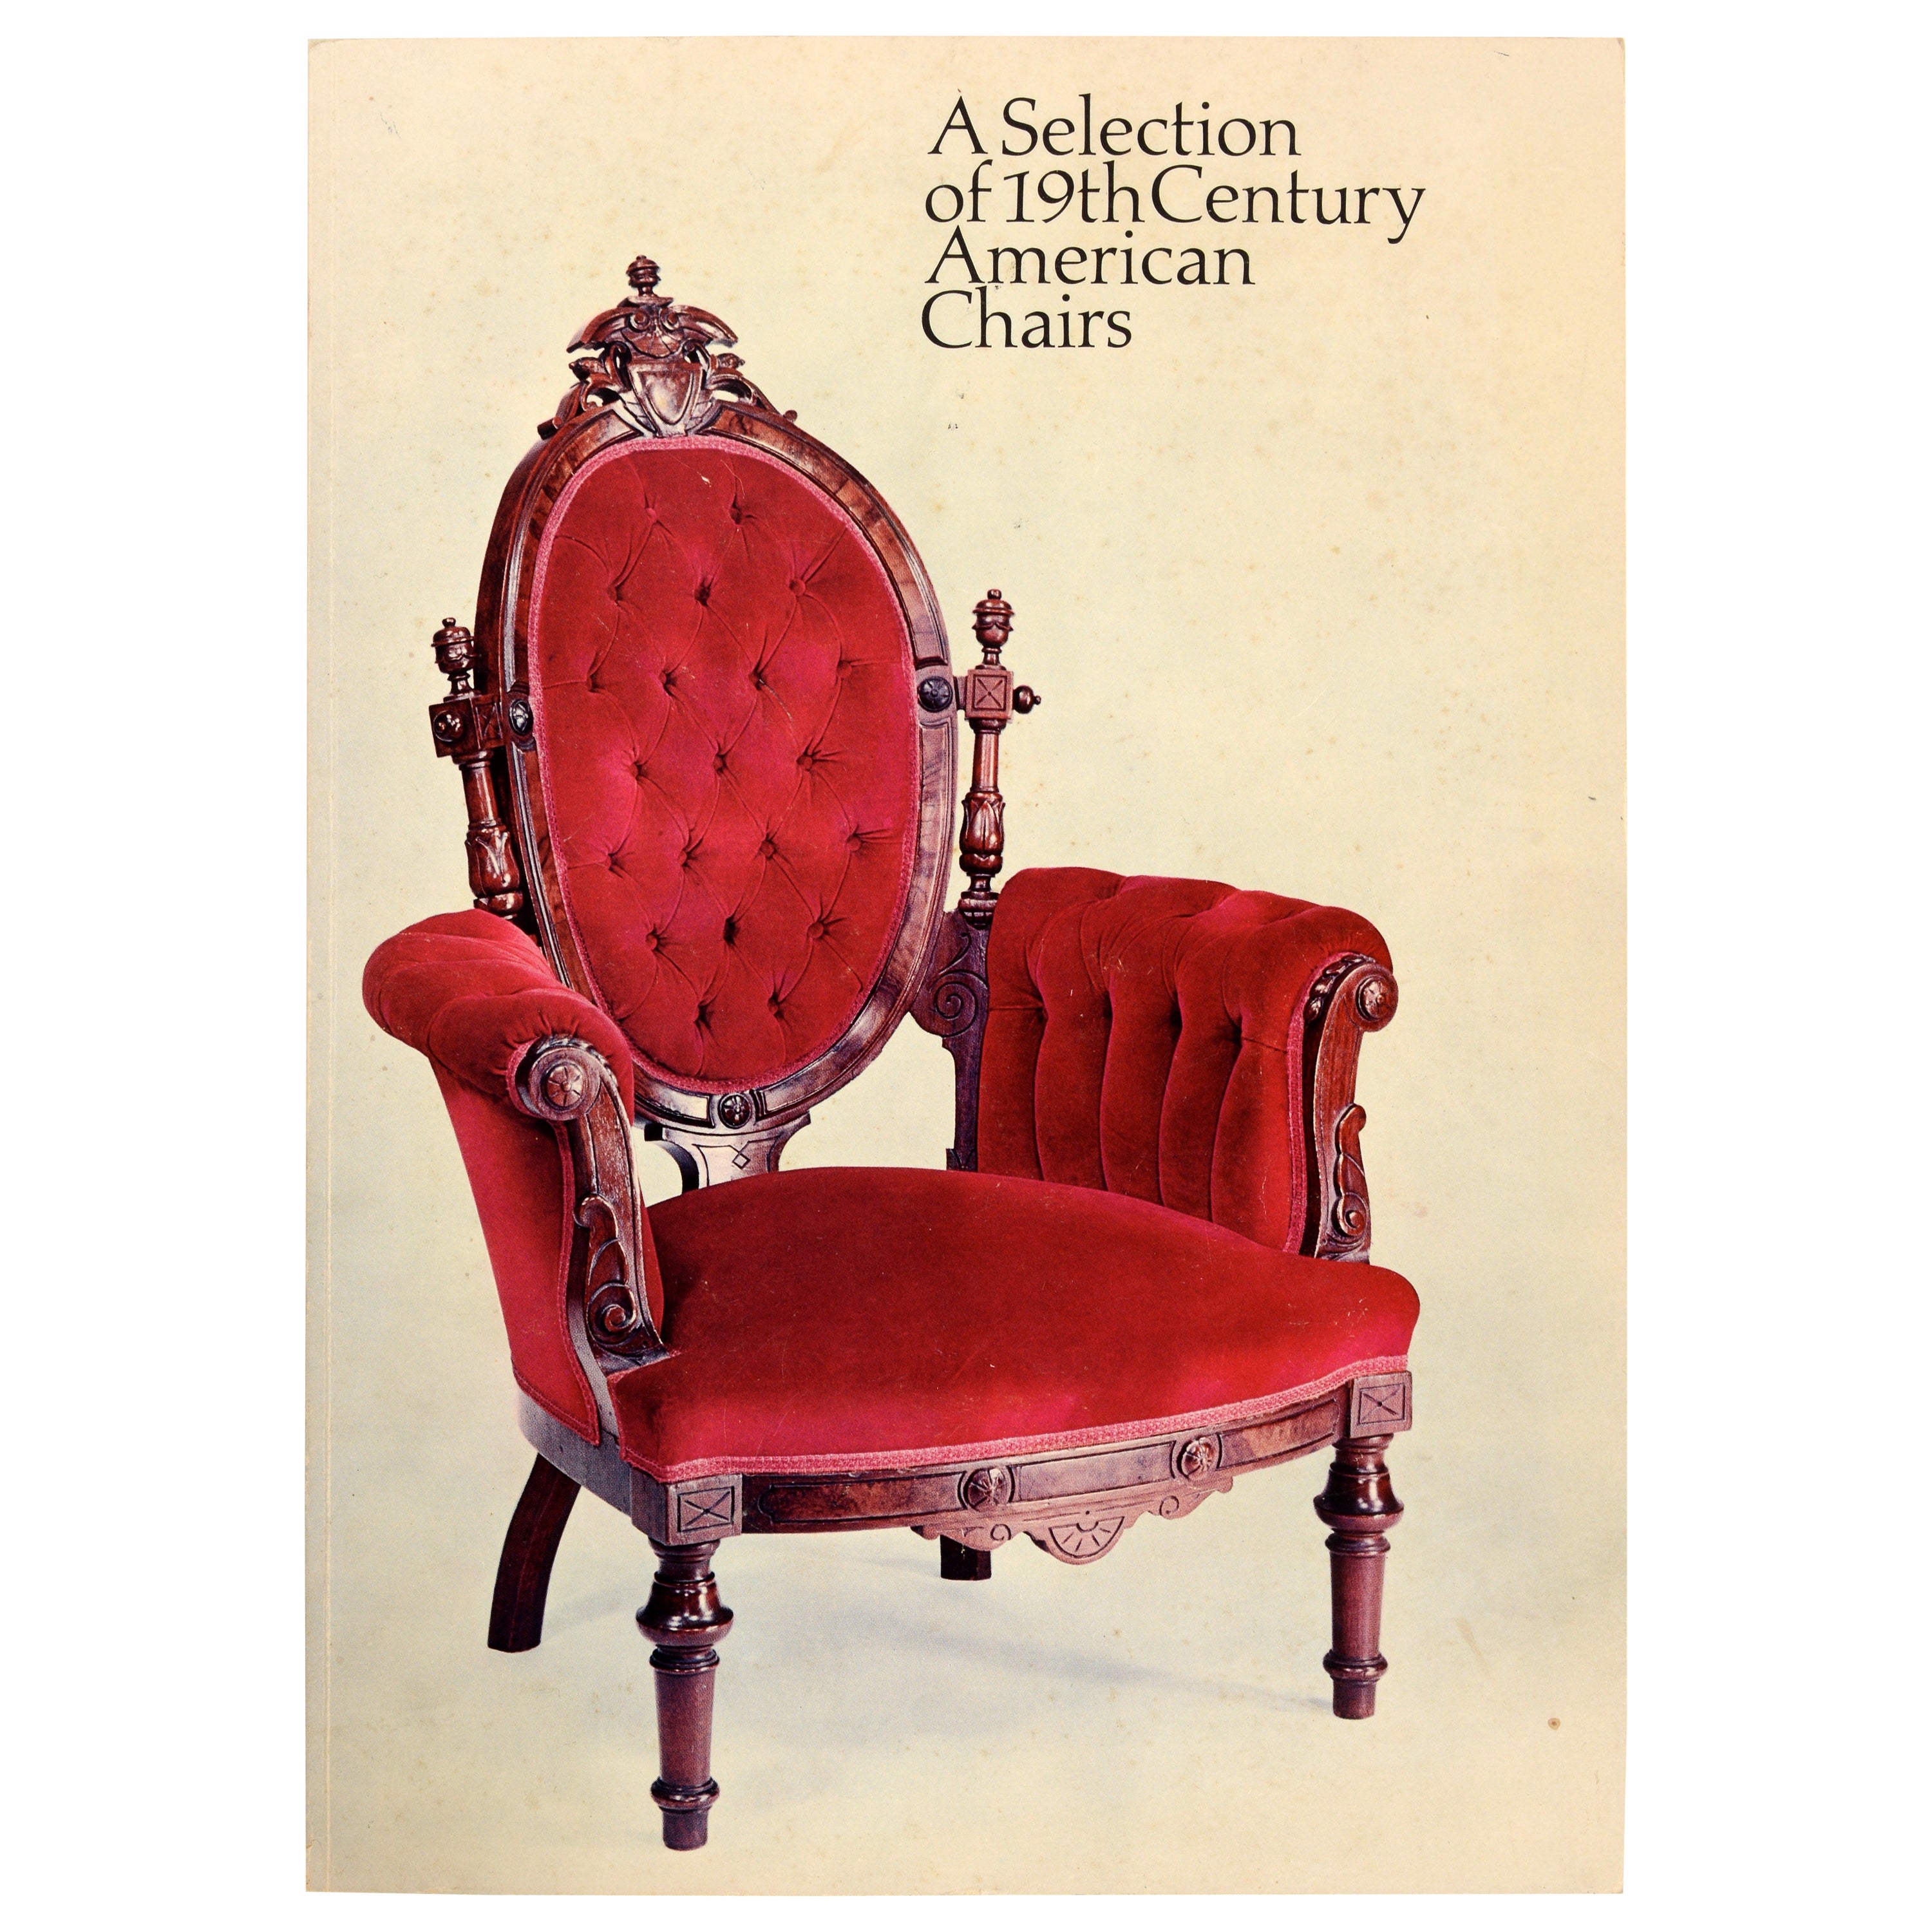 Auswahl amerikanischer Stühle des 19. Jahrhunderts, Ausstellung. The Catalog Signed by the Author, 1. Auflage